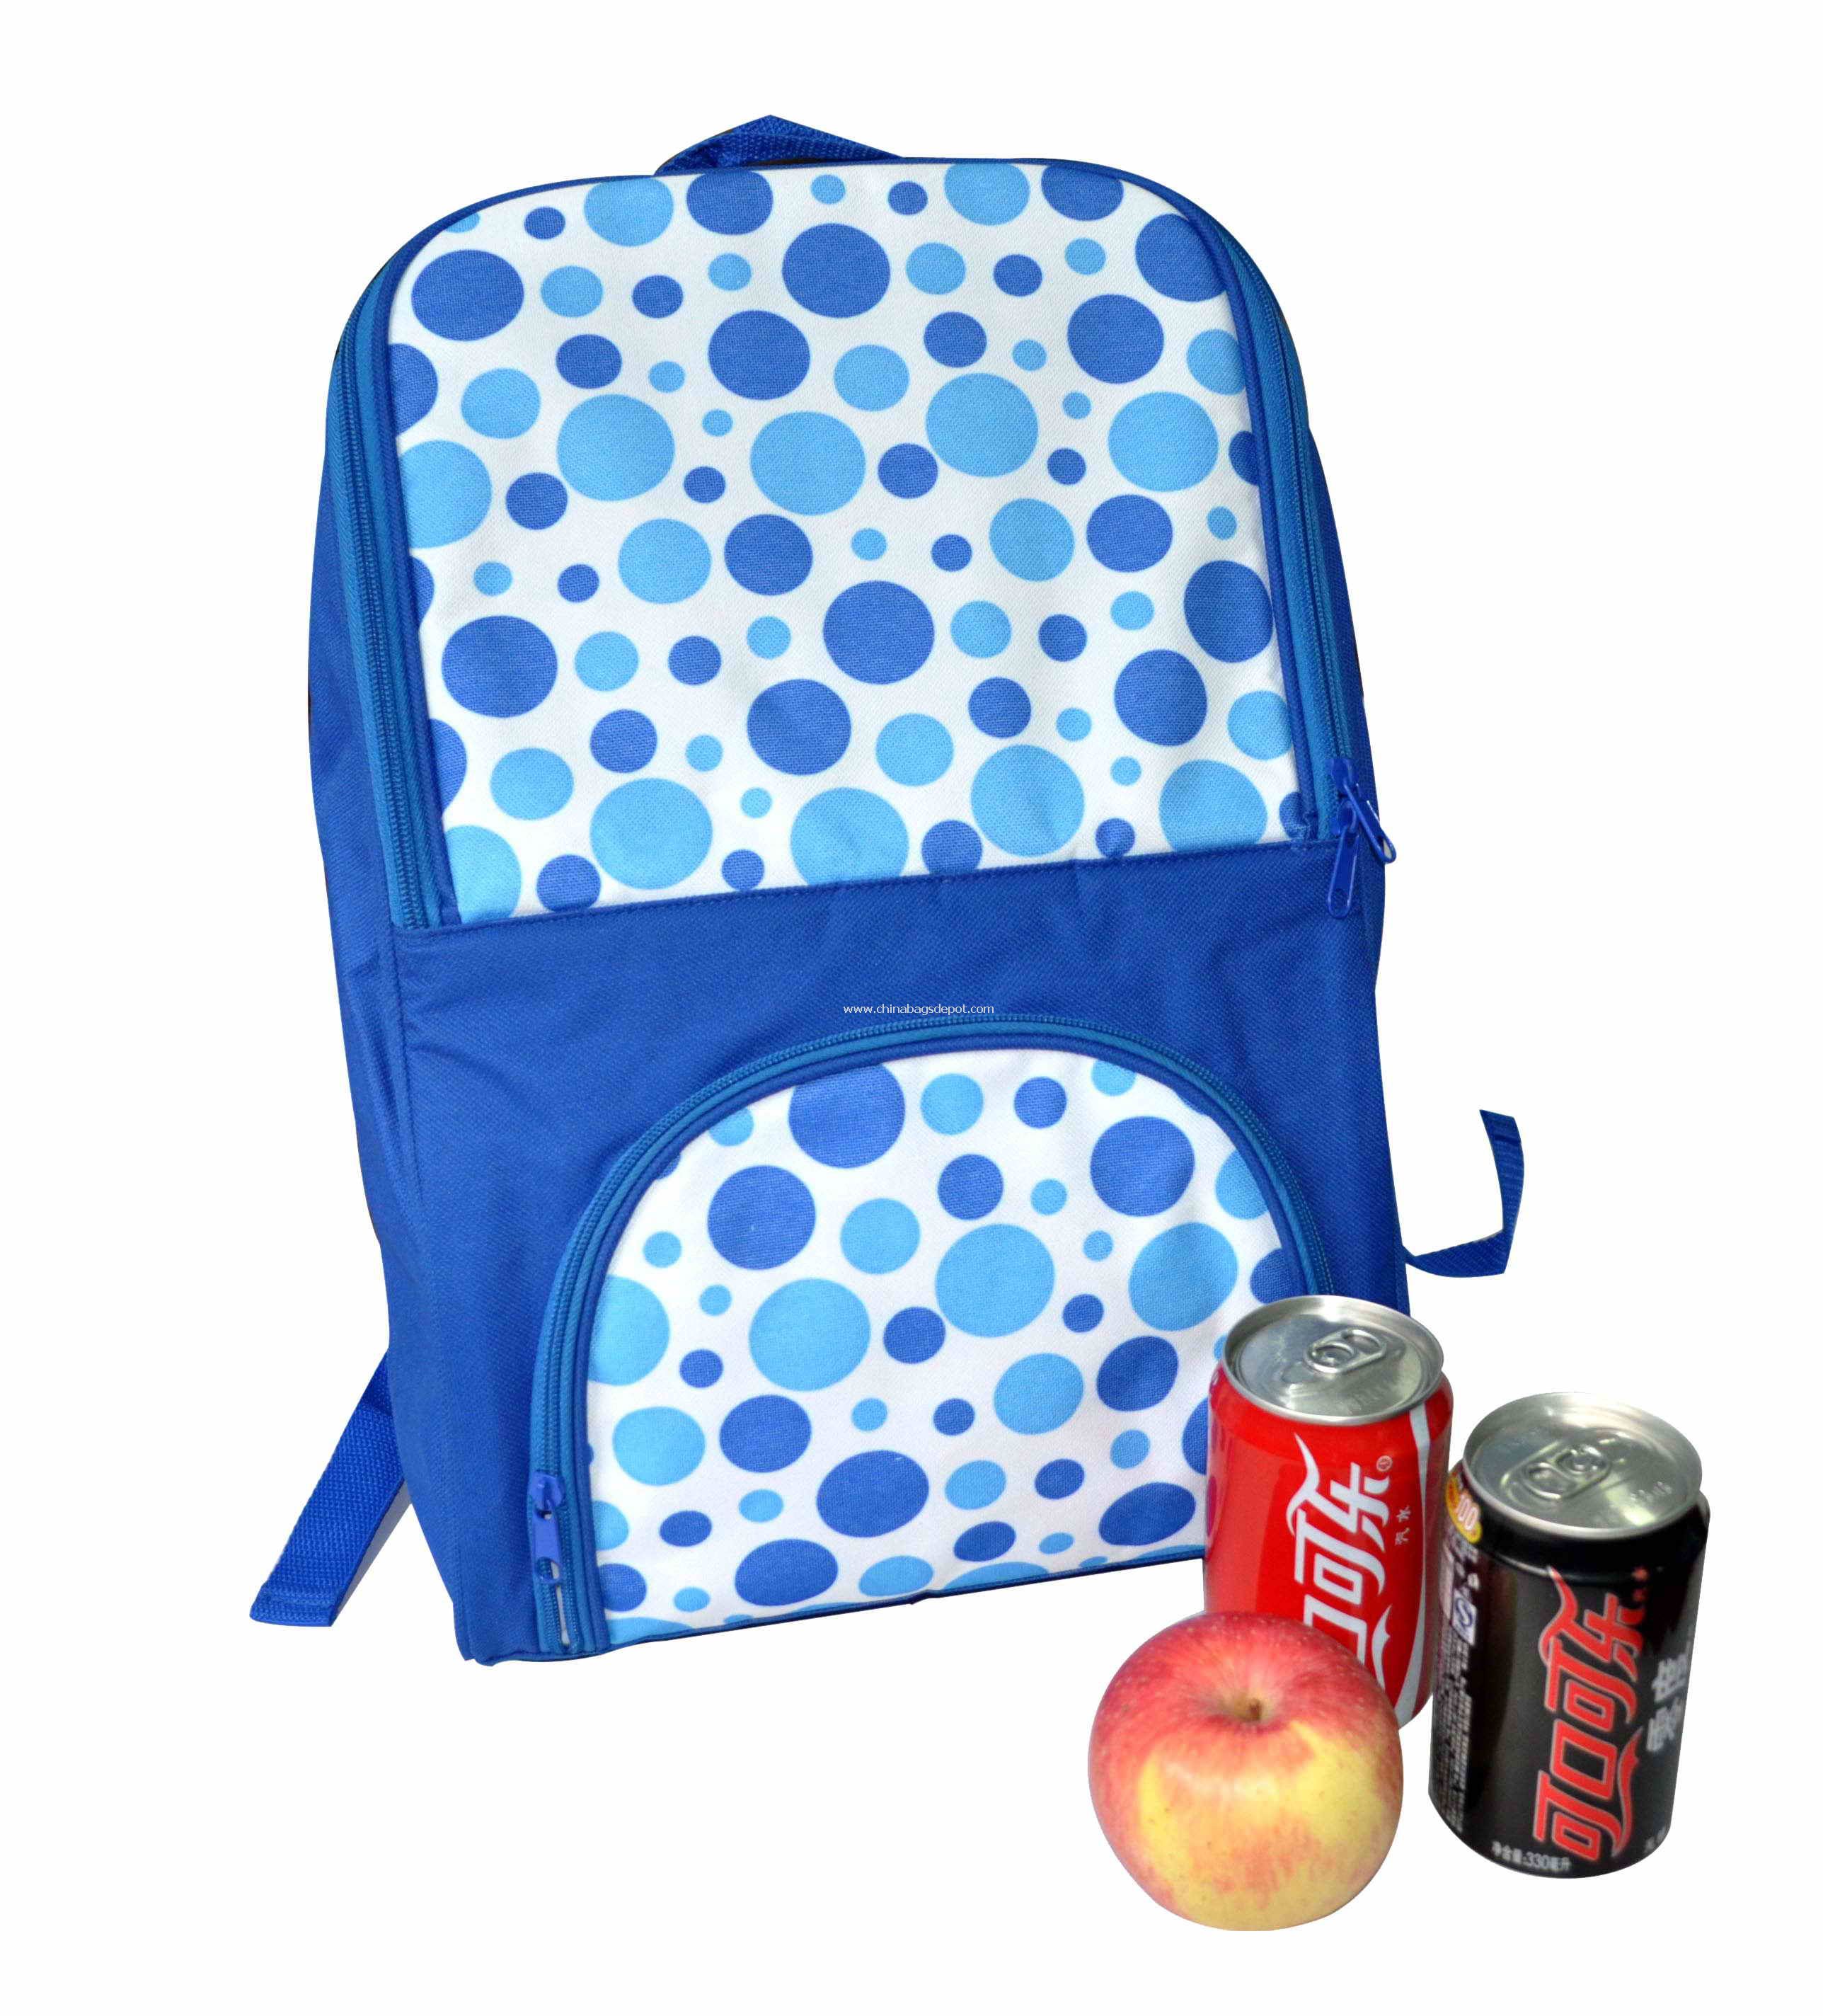 Backpack cooler bag